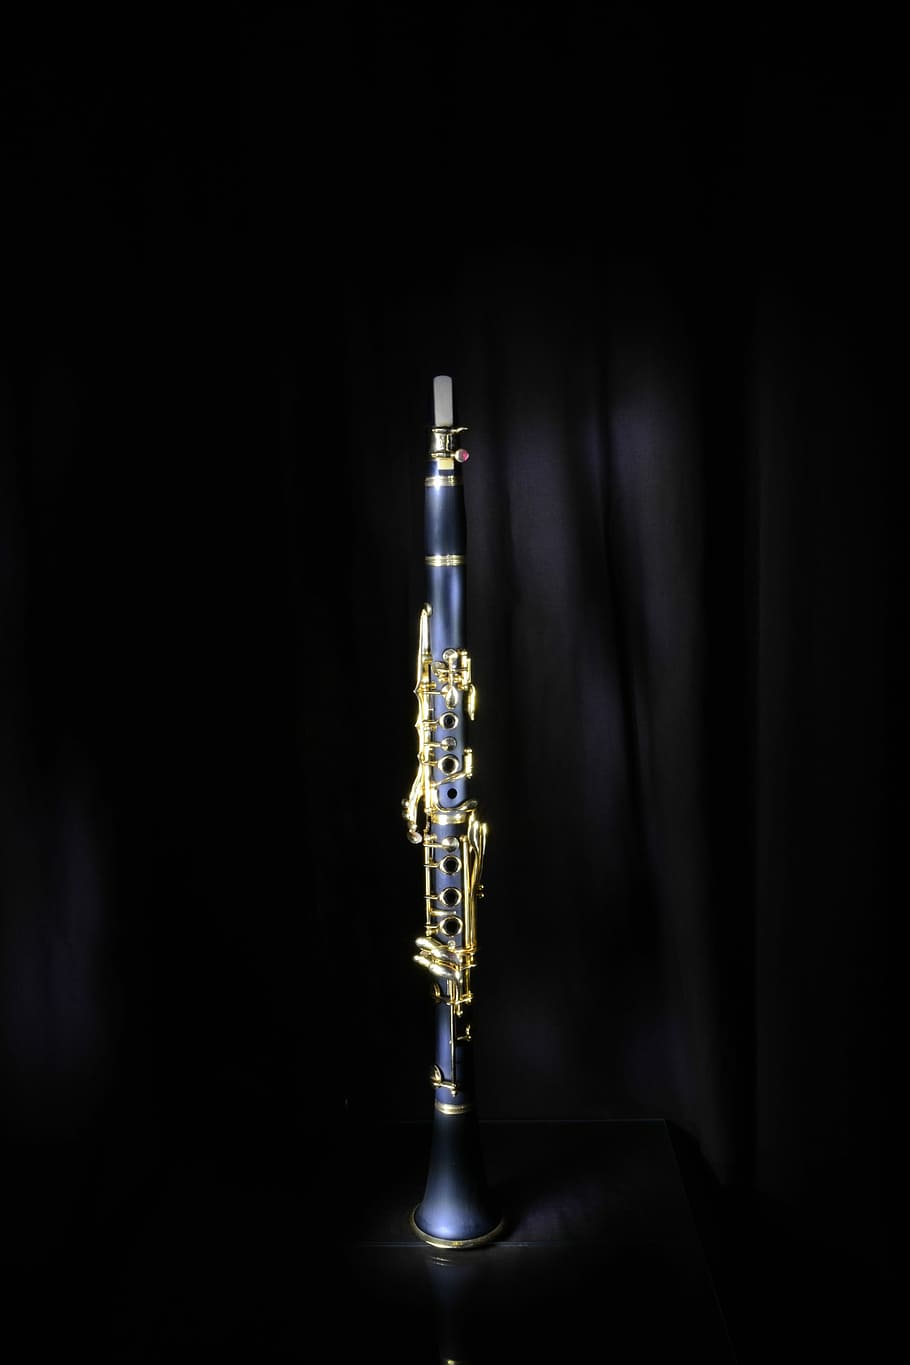 Clarinete, Jazz, Instrumento Musical, música, fundo preto, único objeto, ninguém, close-up, dia, tiro no estúdio